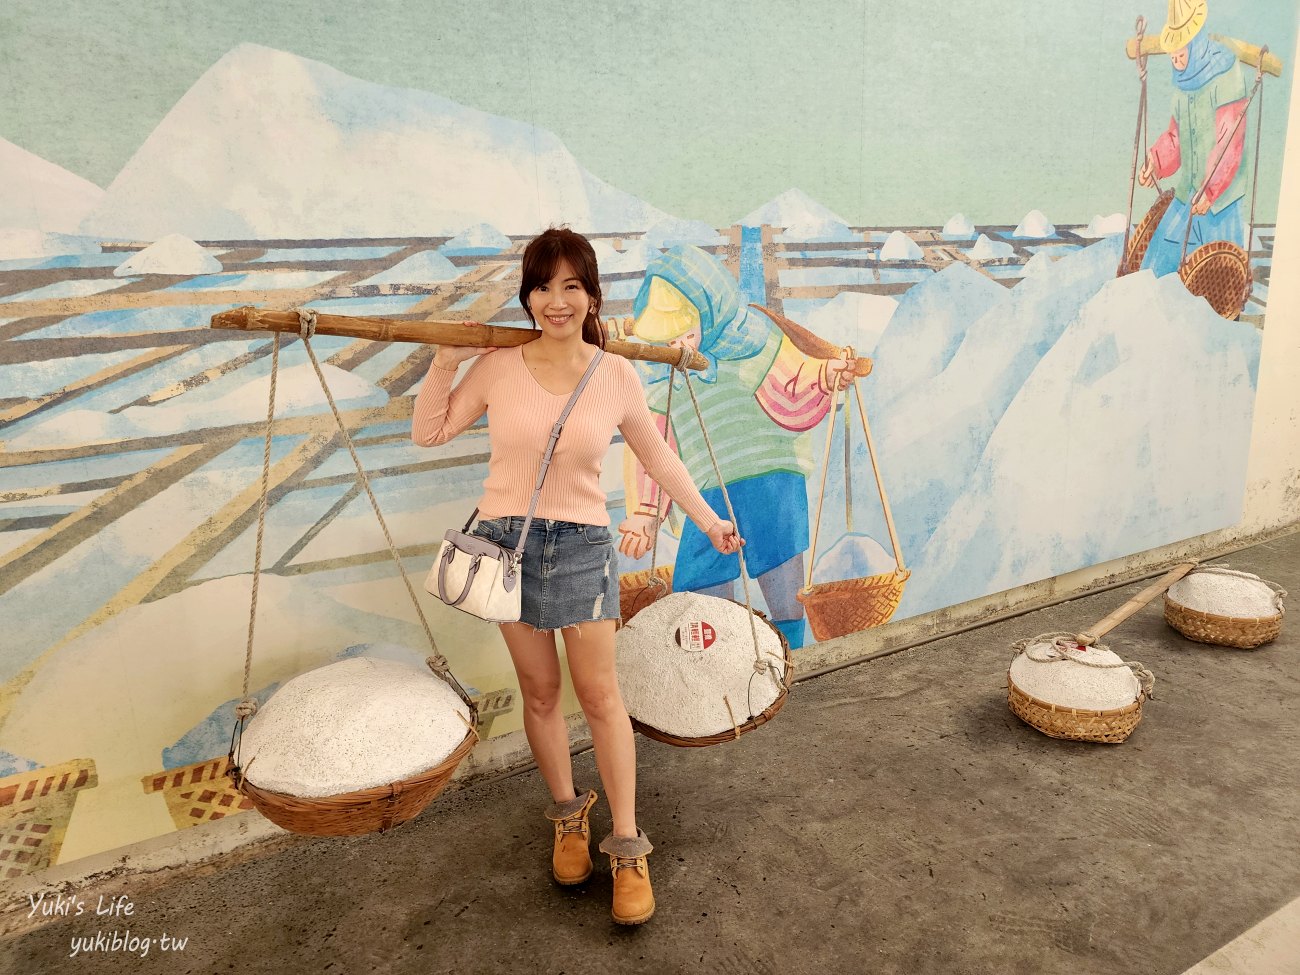 台南景點【七股鹽山】最新三麗鷗鹽雕特展，雪白萌樣的Kitty和蛋黃哥讓人好融化 - yuki.tw